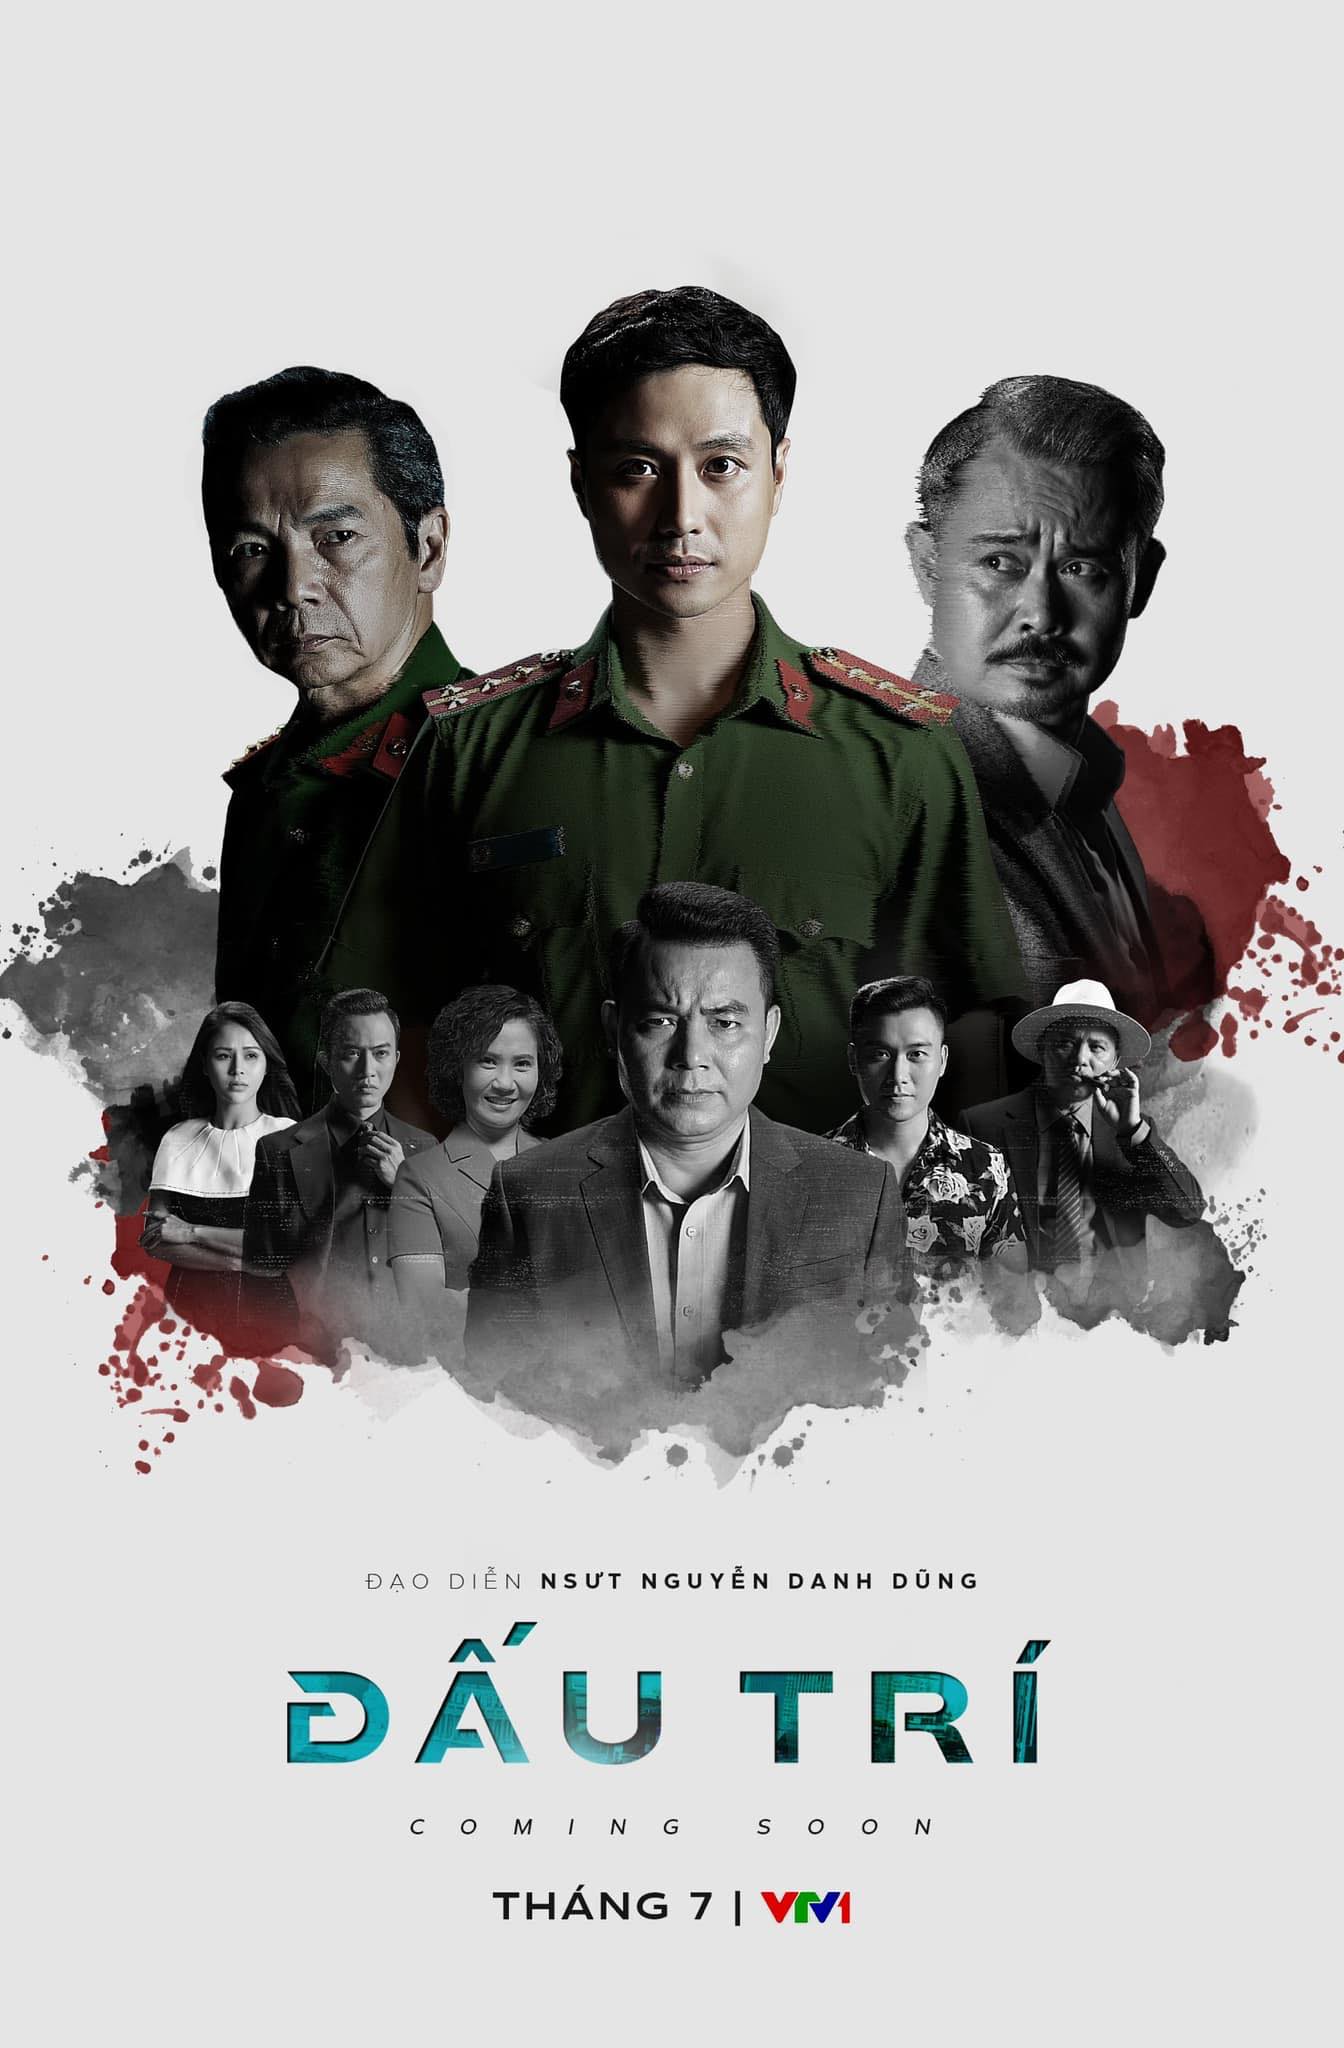 Đại uý Vũ - Thanh Sơn trong phim Đấu trí bật mí cảnh quay căng não, khó nhằn trên phim - Ảnh 5.